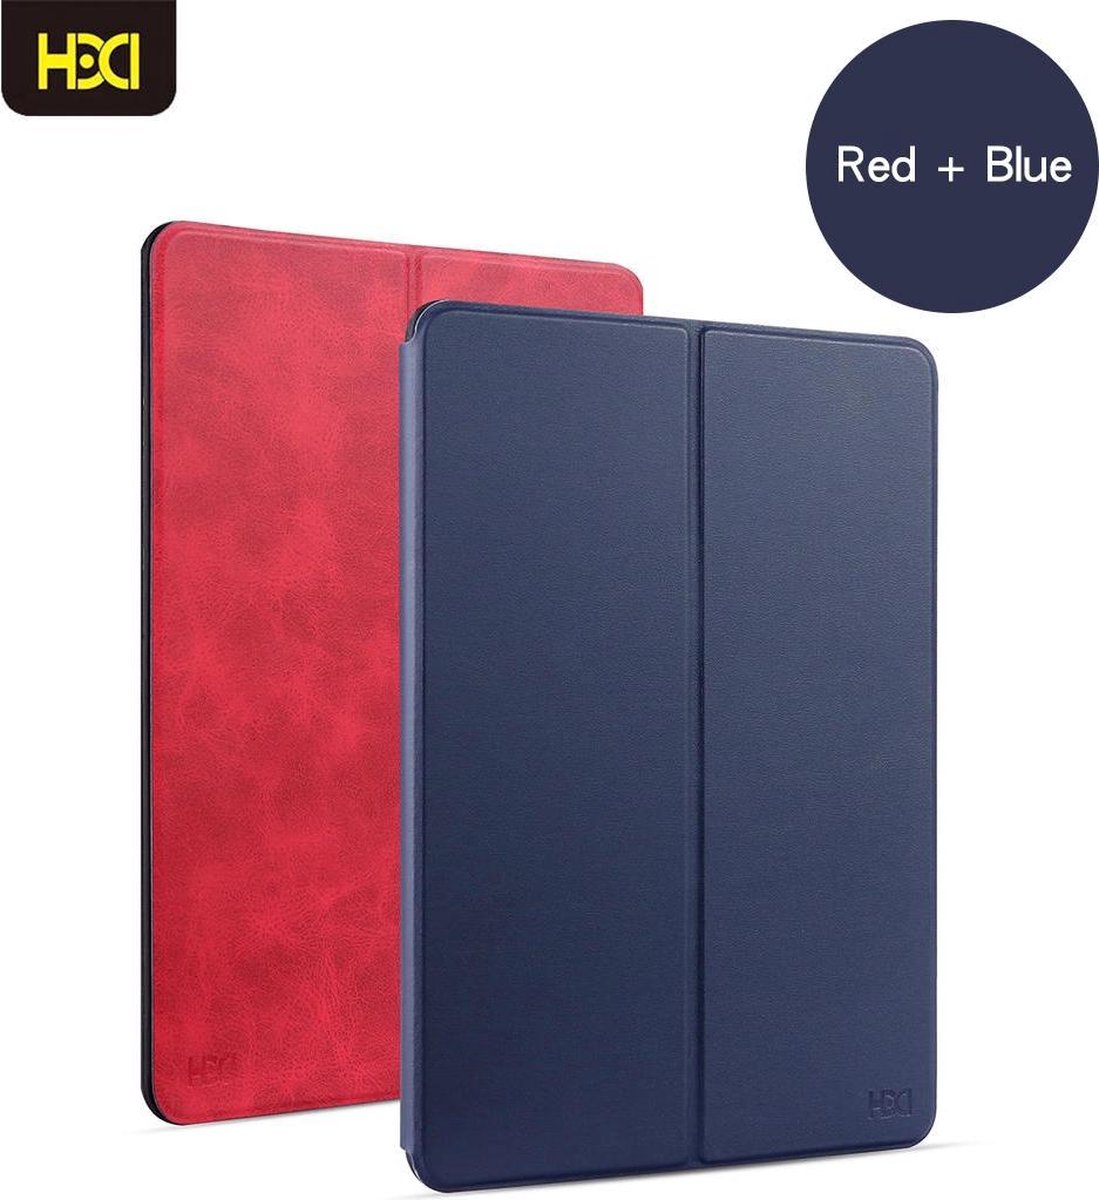 HDD Luxe/Hoesje/Smartcover/Auto Wake Functie/ 2 kleuren in 1 hoesje/ Donkerblauw + Rood geschikt voor Apple iPad MINI 4/5